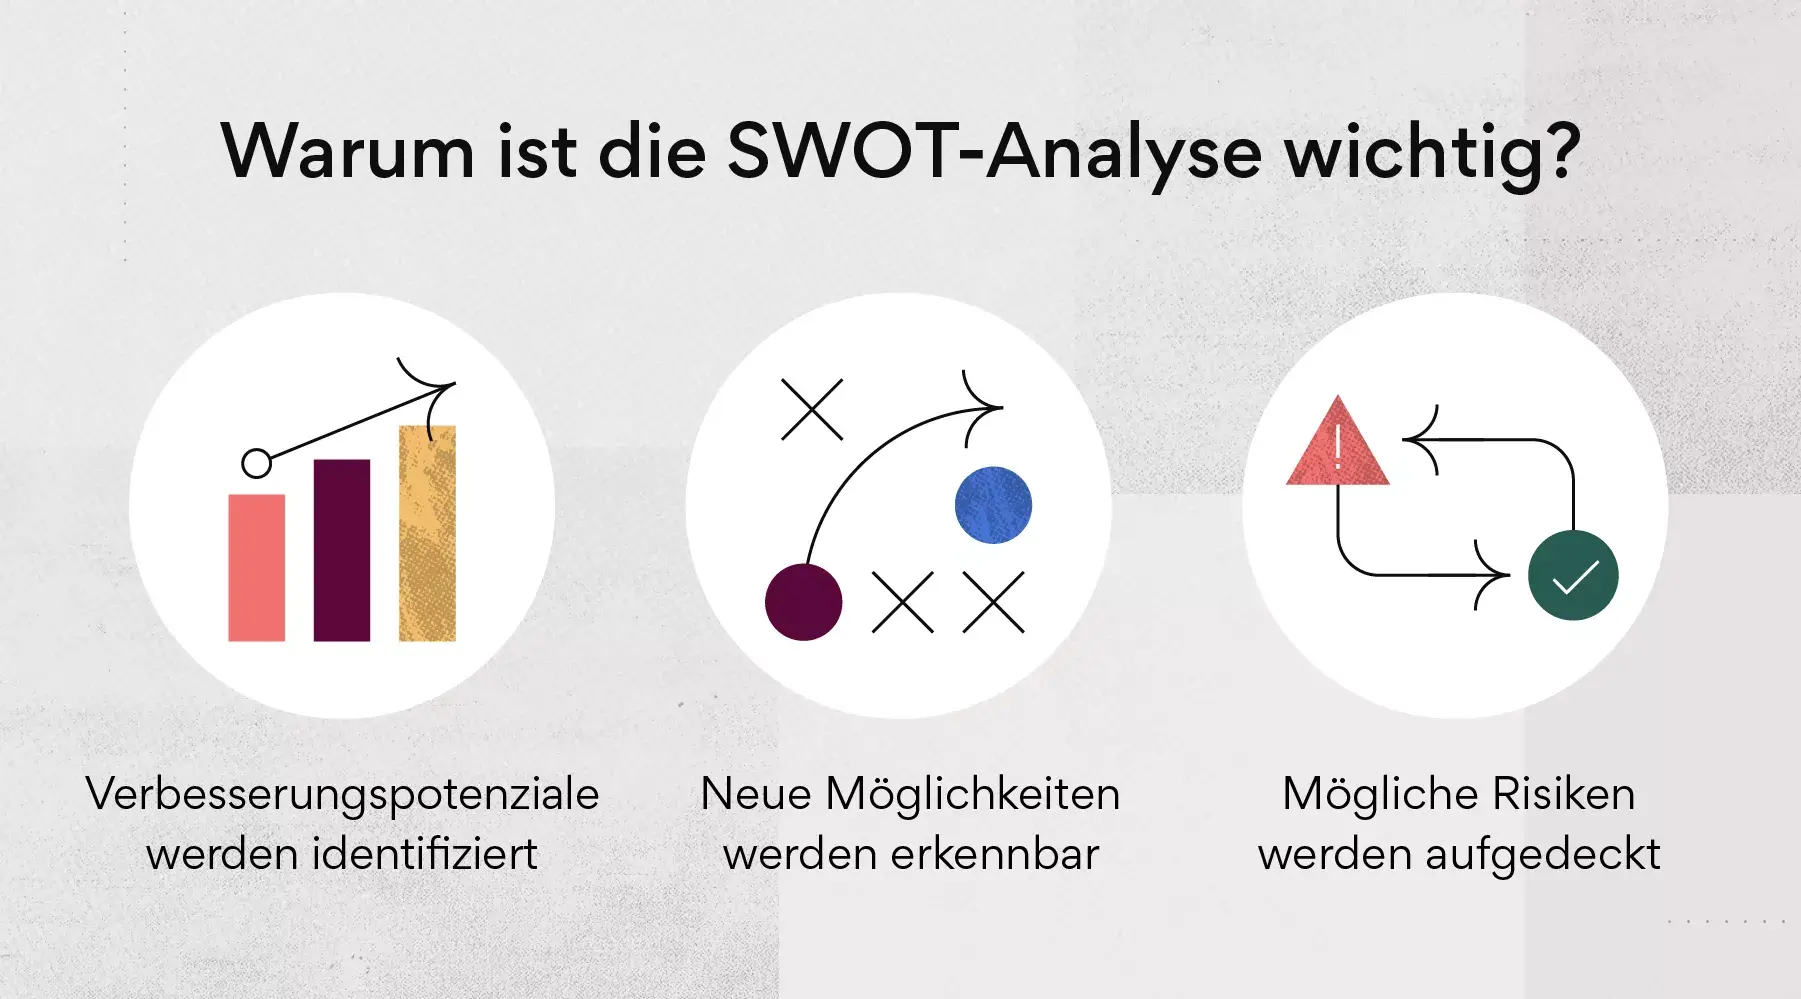 Warum ist die SWOT-Analyse wichtig?